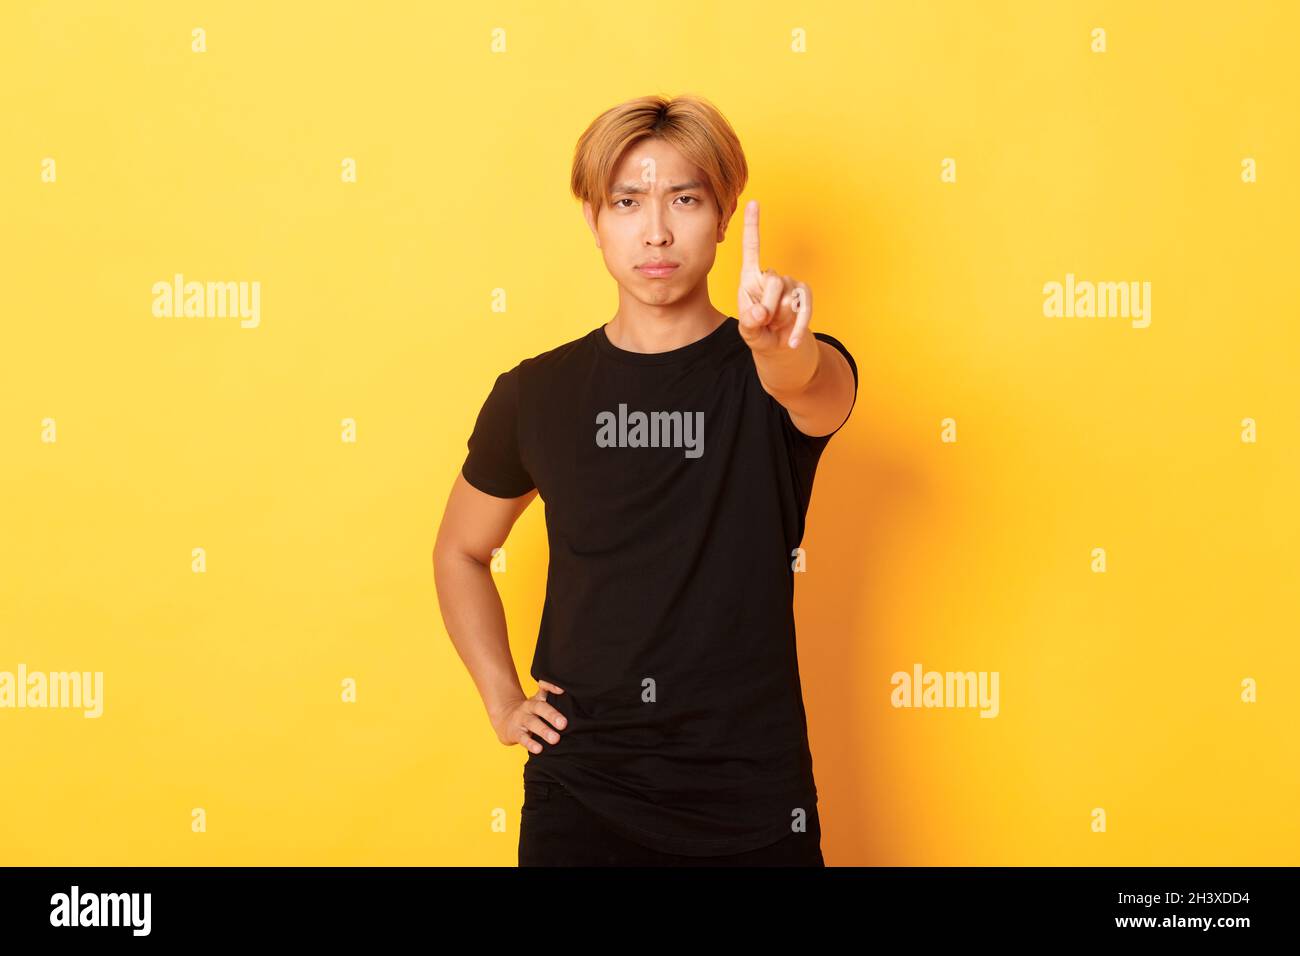 Portrait d'un homme asiatique sérieux et déçu, secouant le doigt pour faire froid à quelqu'un, debout sur fond jaune Banque D'Images